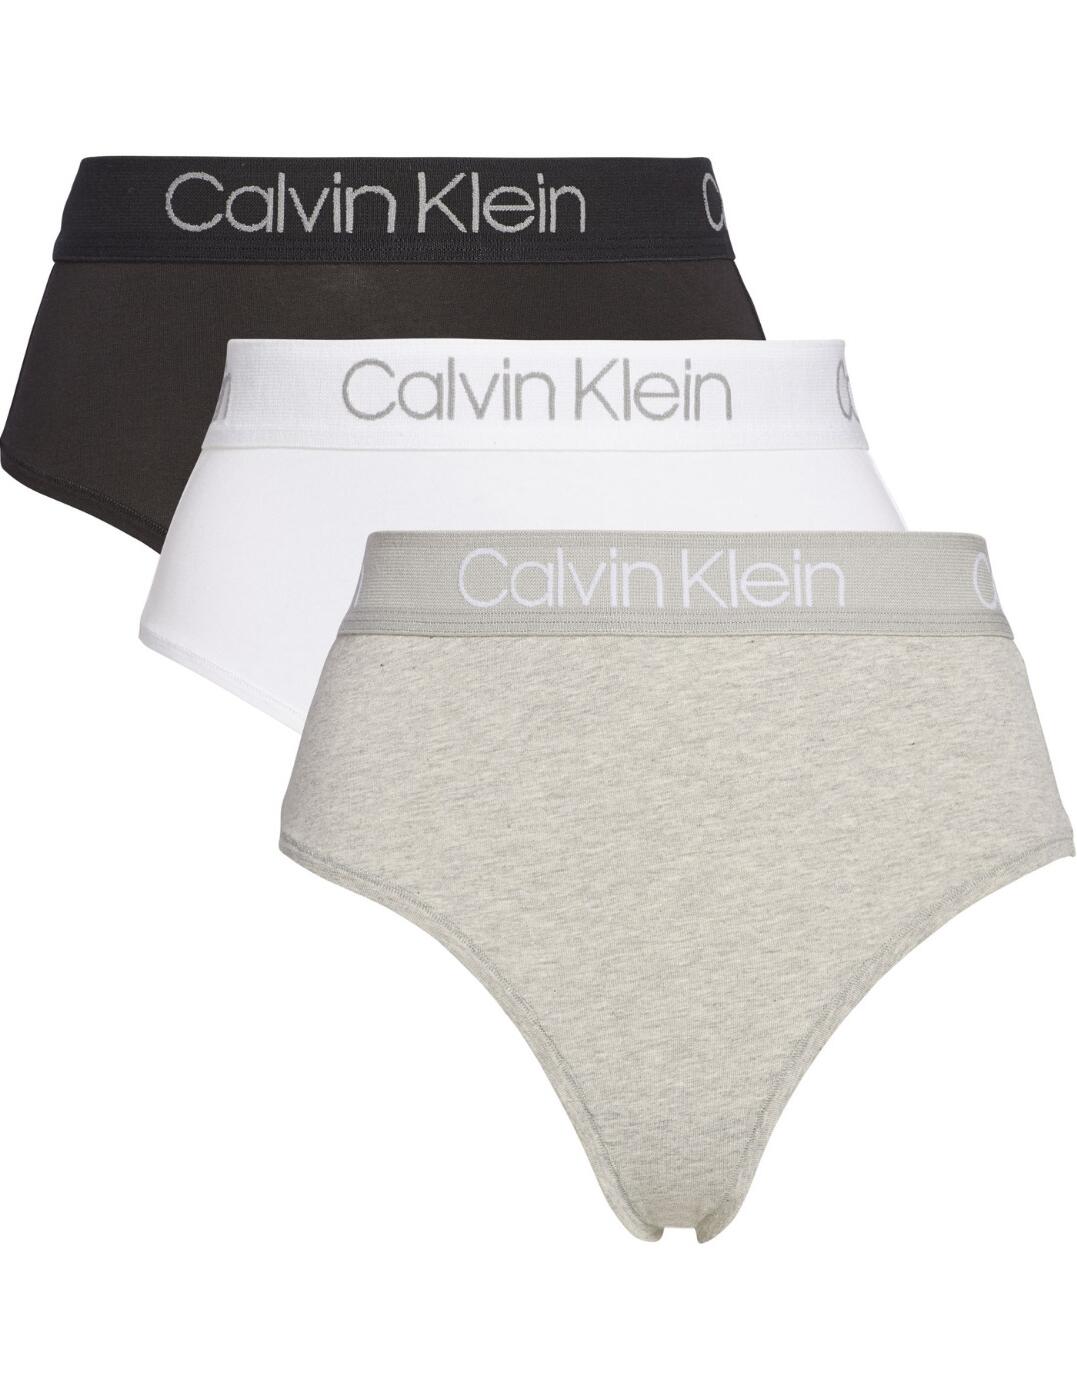 Buy Calvin Klein Underwear High Waist Thong - Black